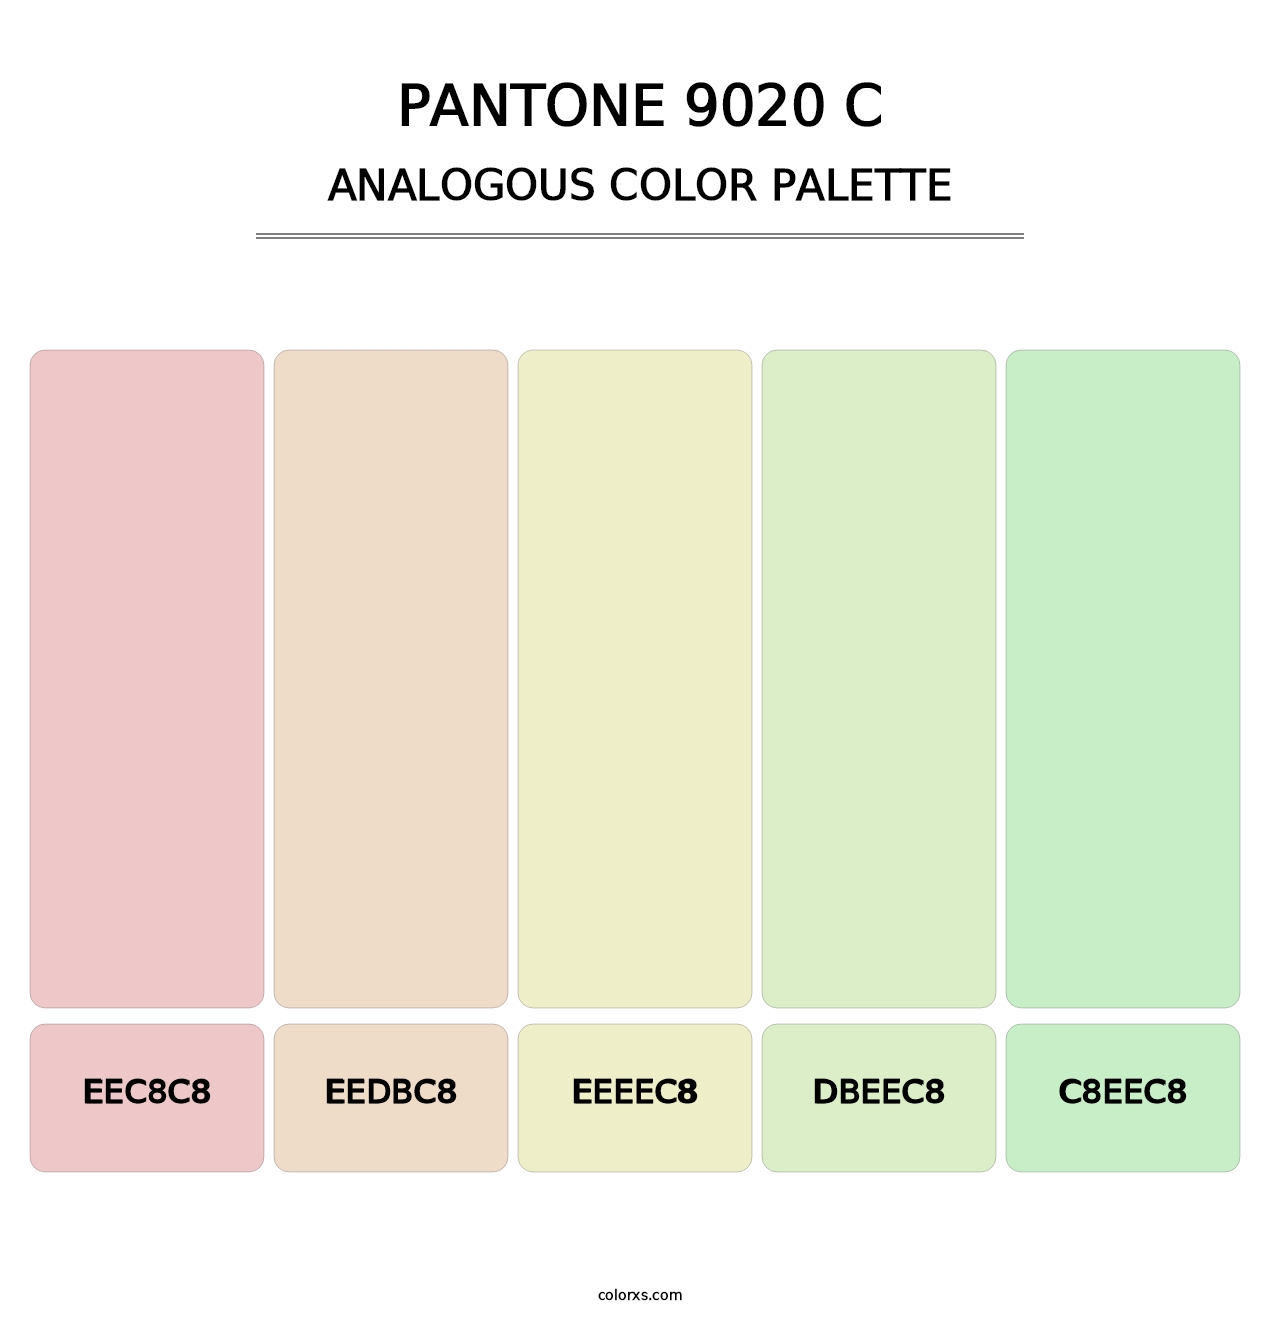 PANTONE 9020 C - Analogous Color Palette